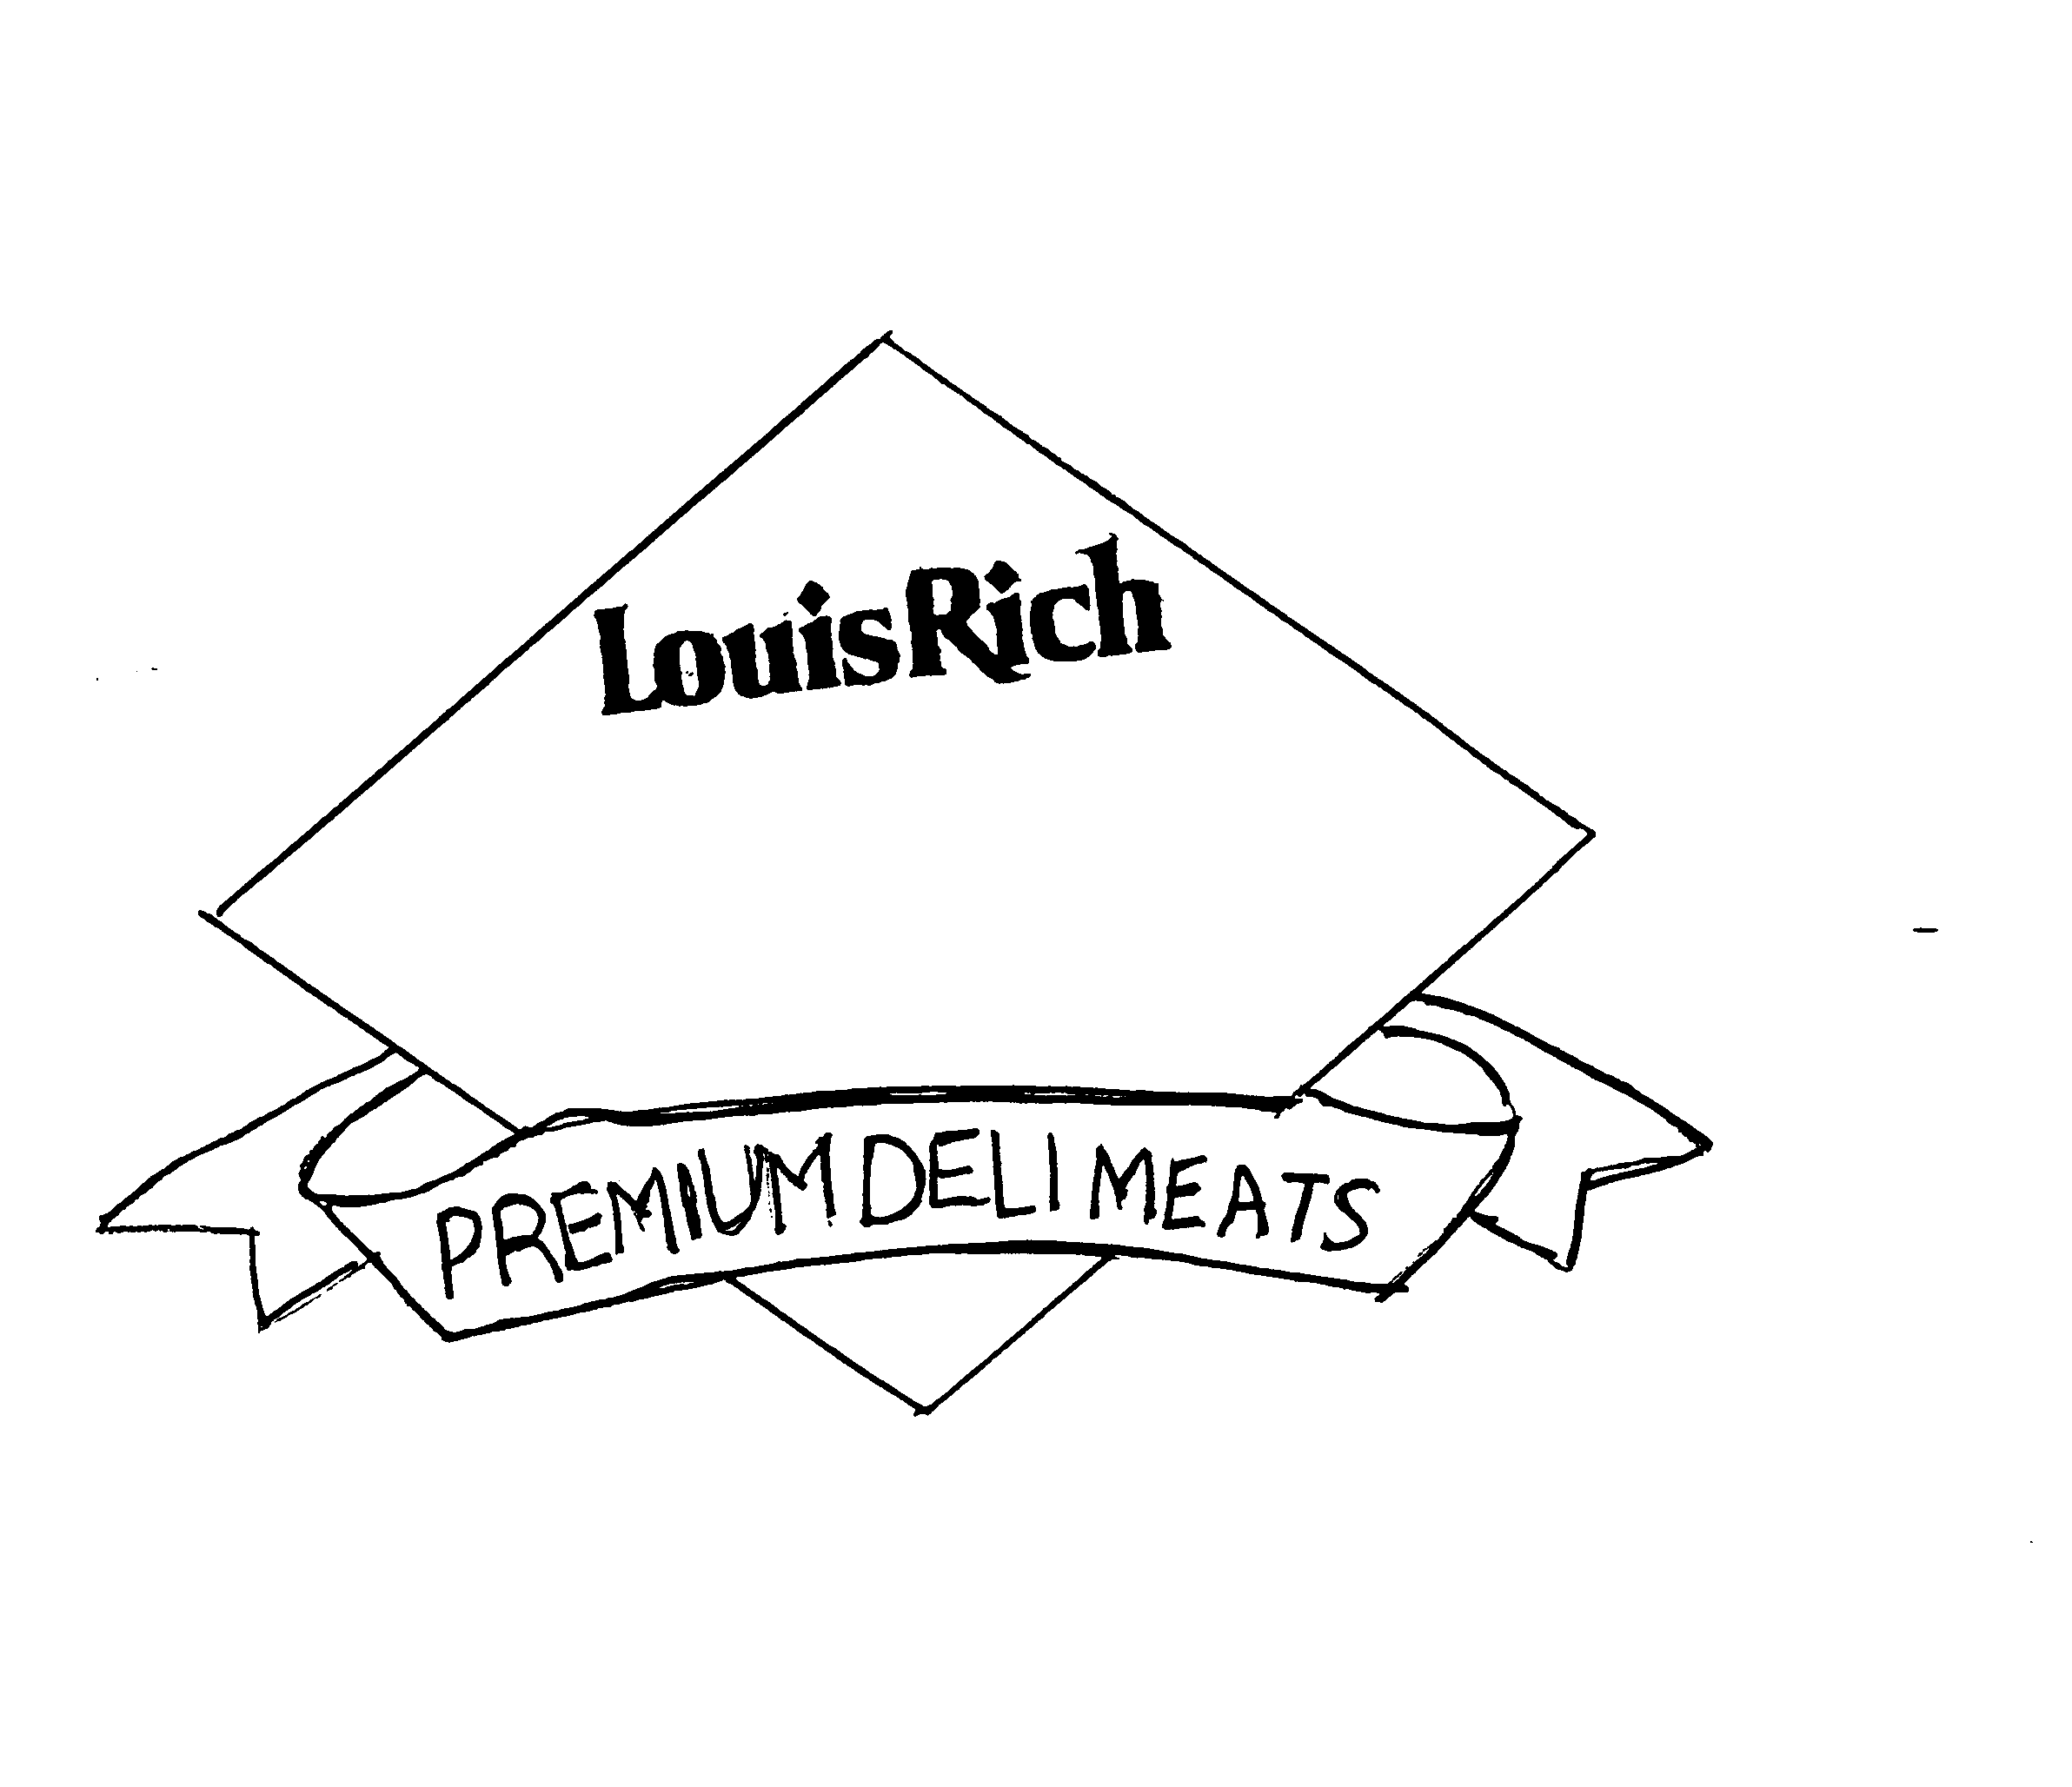  LOUIS RICH PREMIUM DELI MEATS